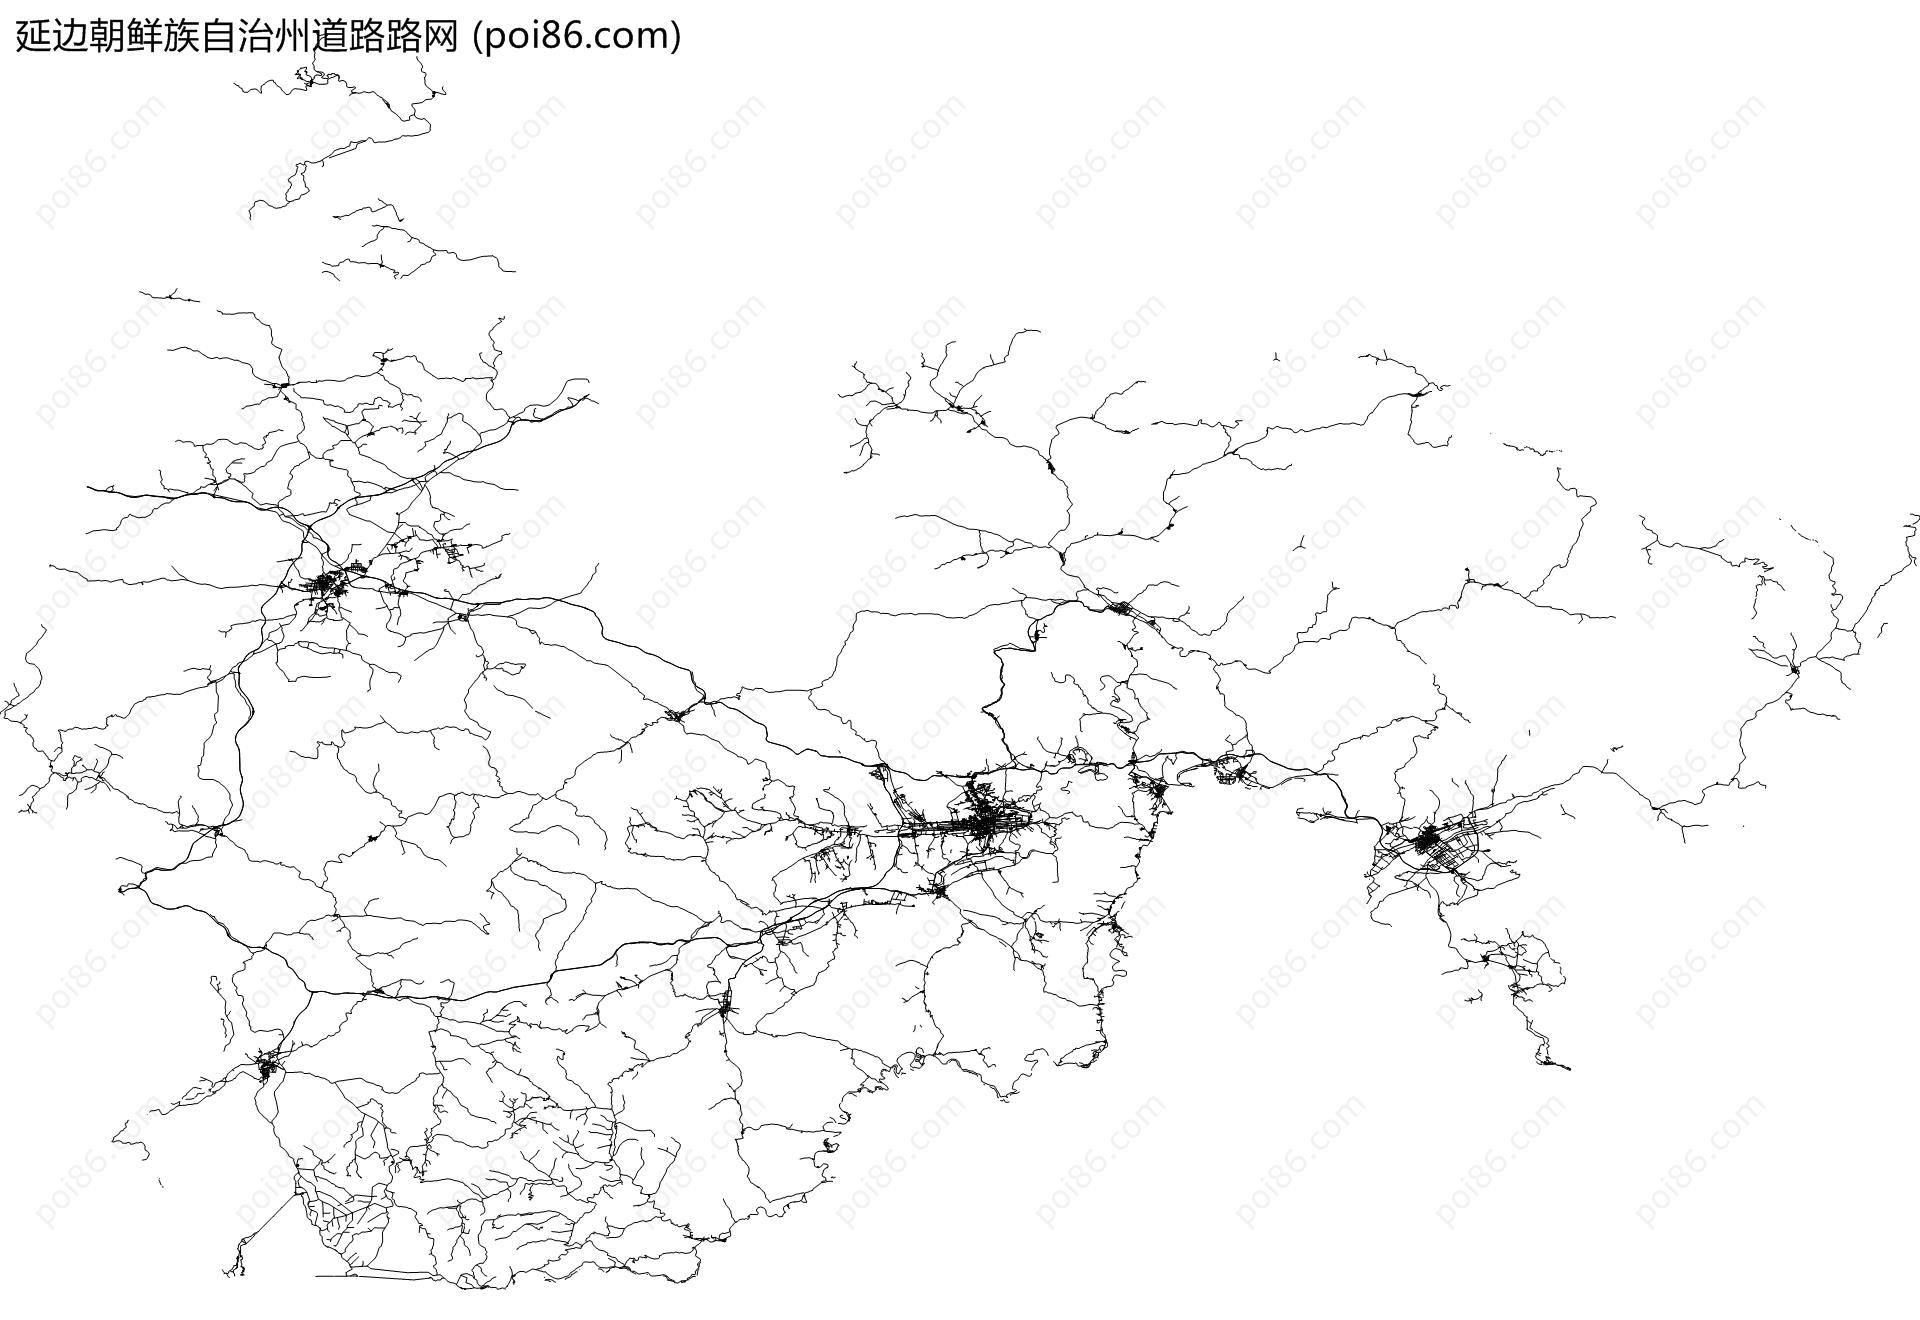 延边朝鲜族自治州道路路网地图